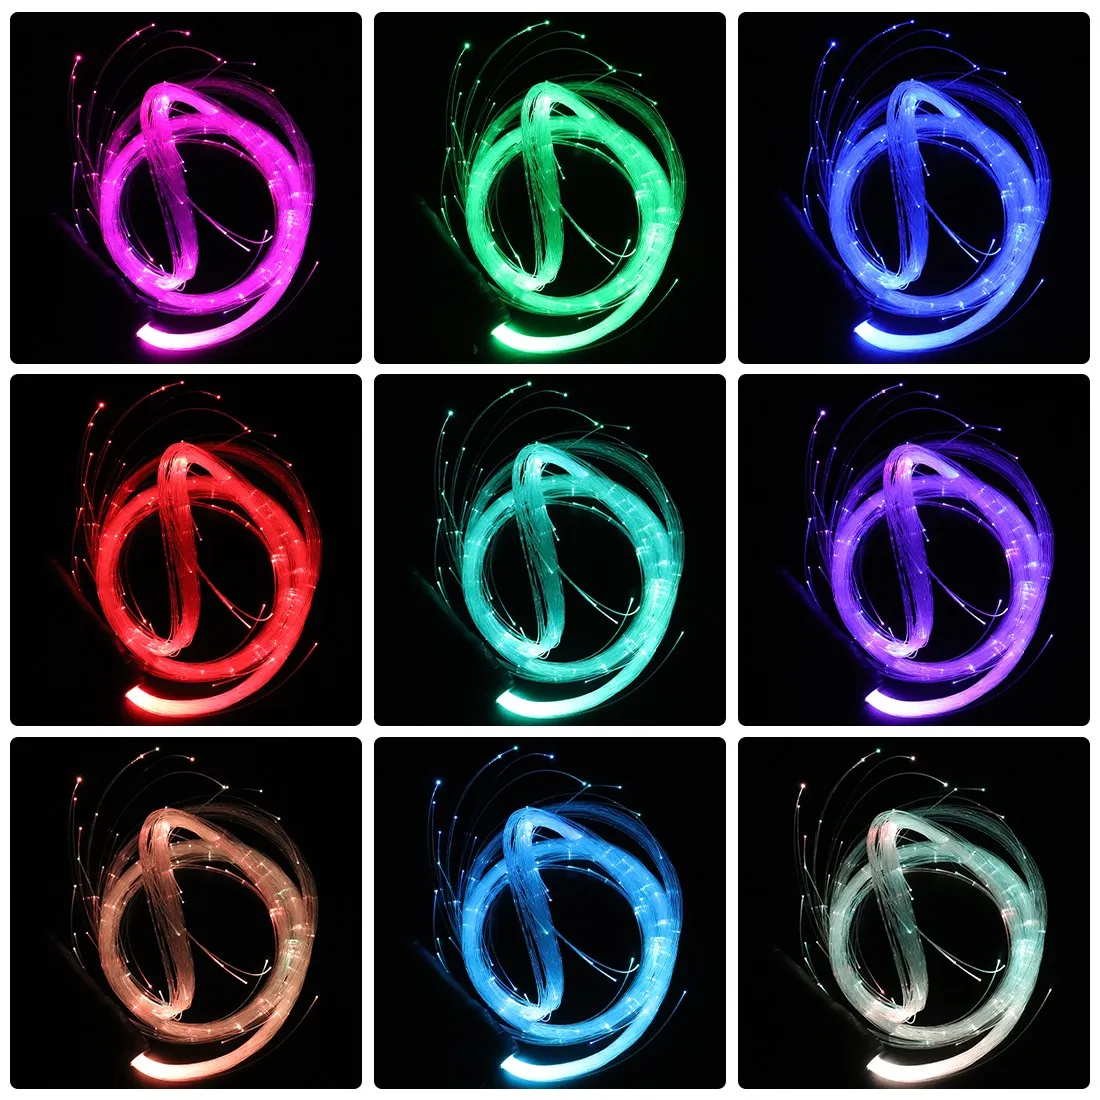 LED волокно оптическое кнут Одноцветный 360 градусов танцевальное пространство кнут супер яркий блеск хлыст для вечеринок светодиод показывает музыкального фестиваля